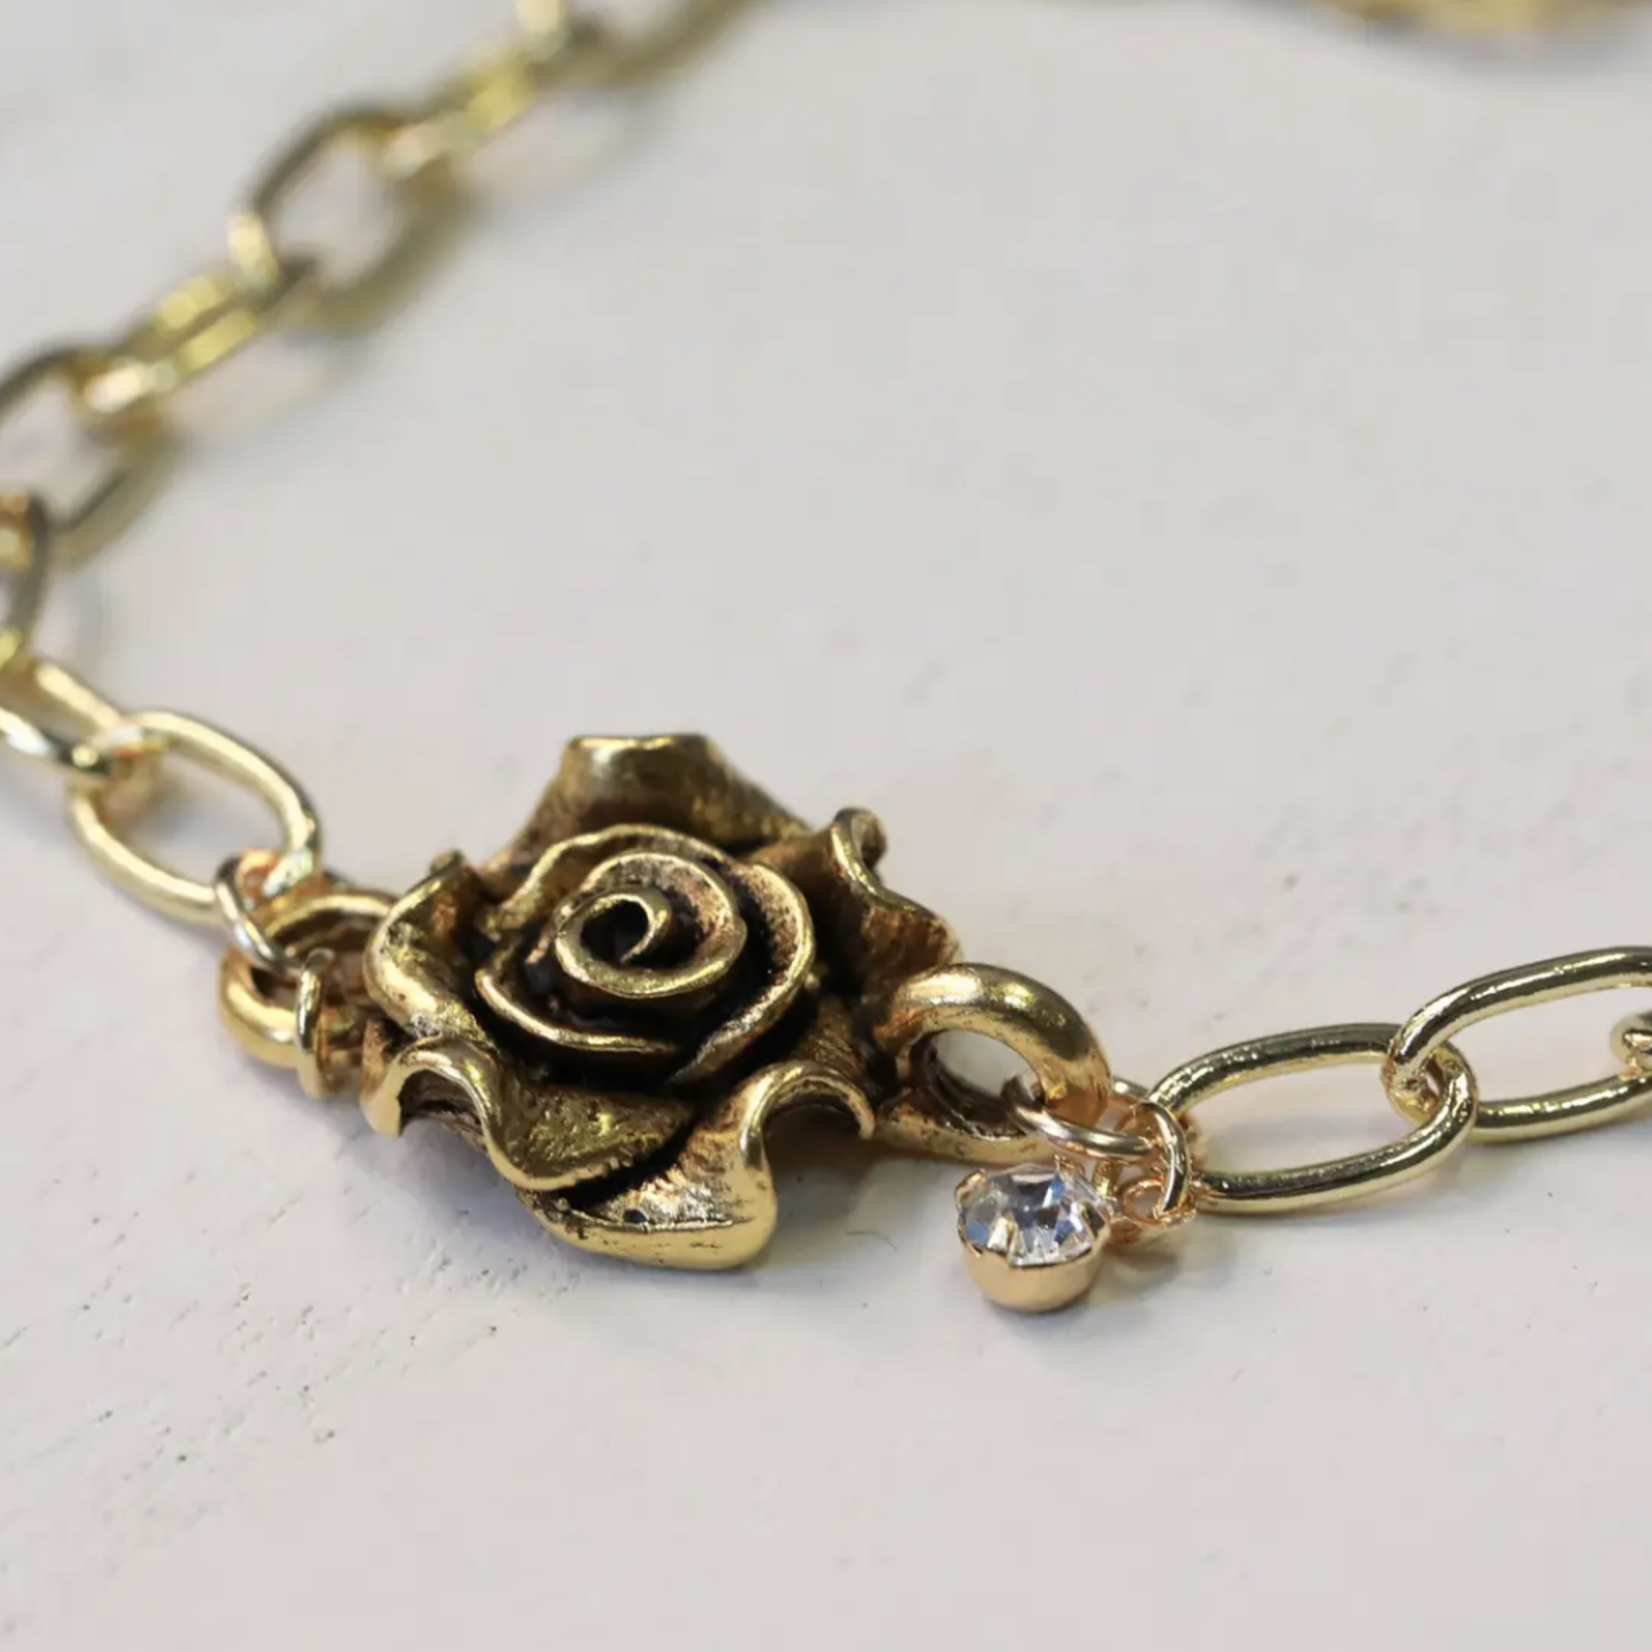 *Golden Rose Lariat Necklace · Gold